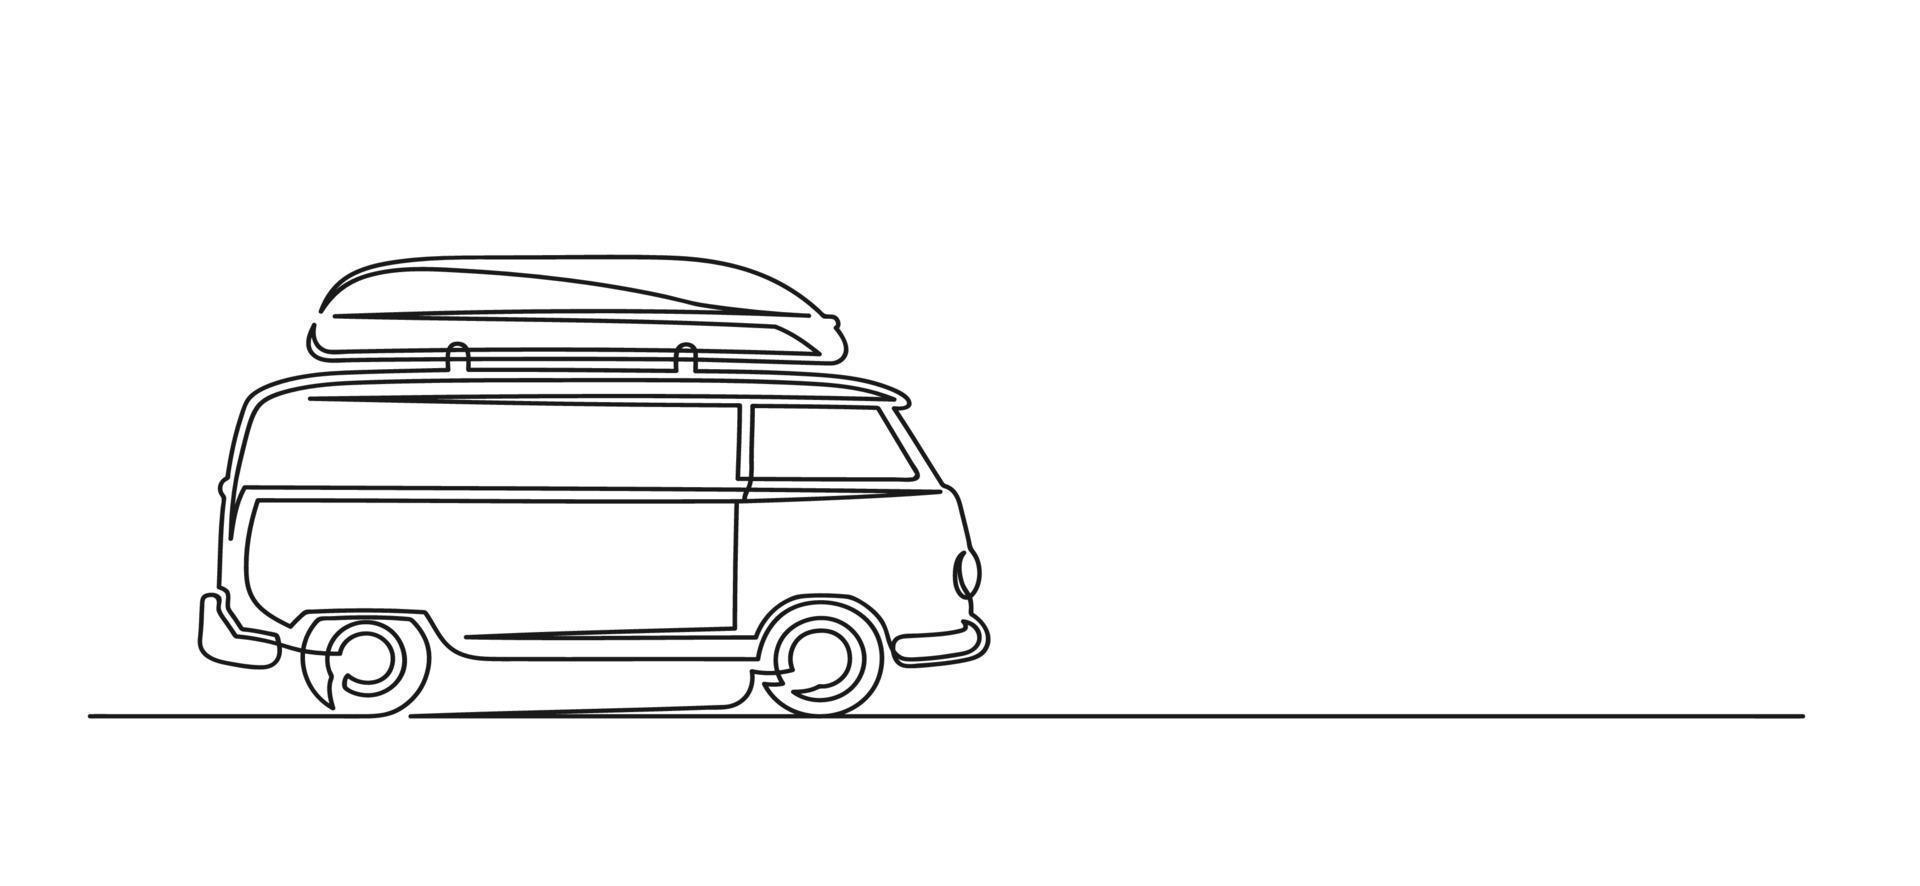 dessin continu d'une ligne d'une camionnette de voyage vecteur